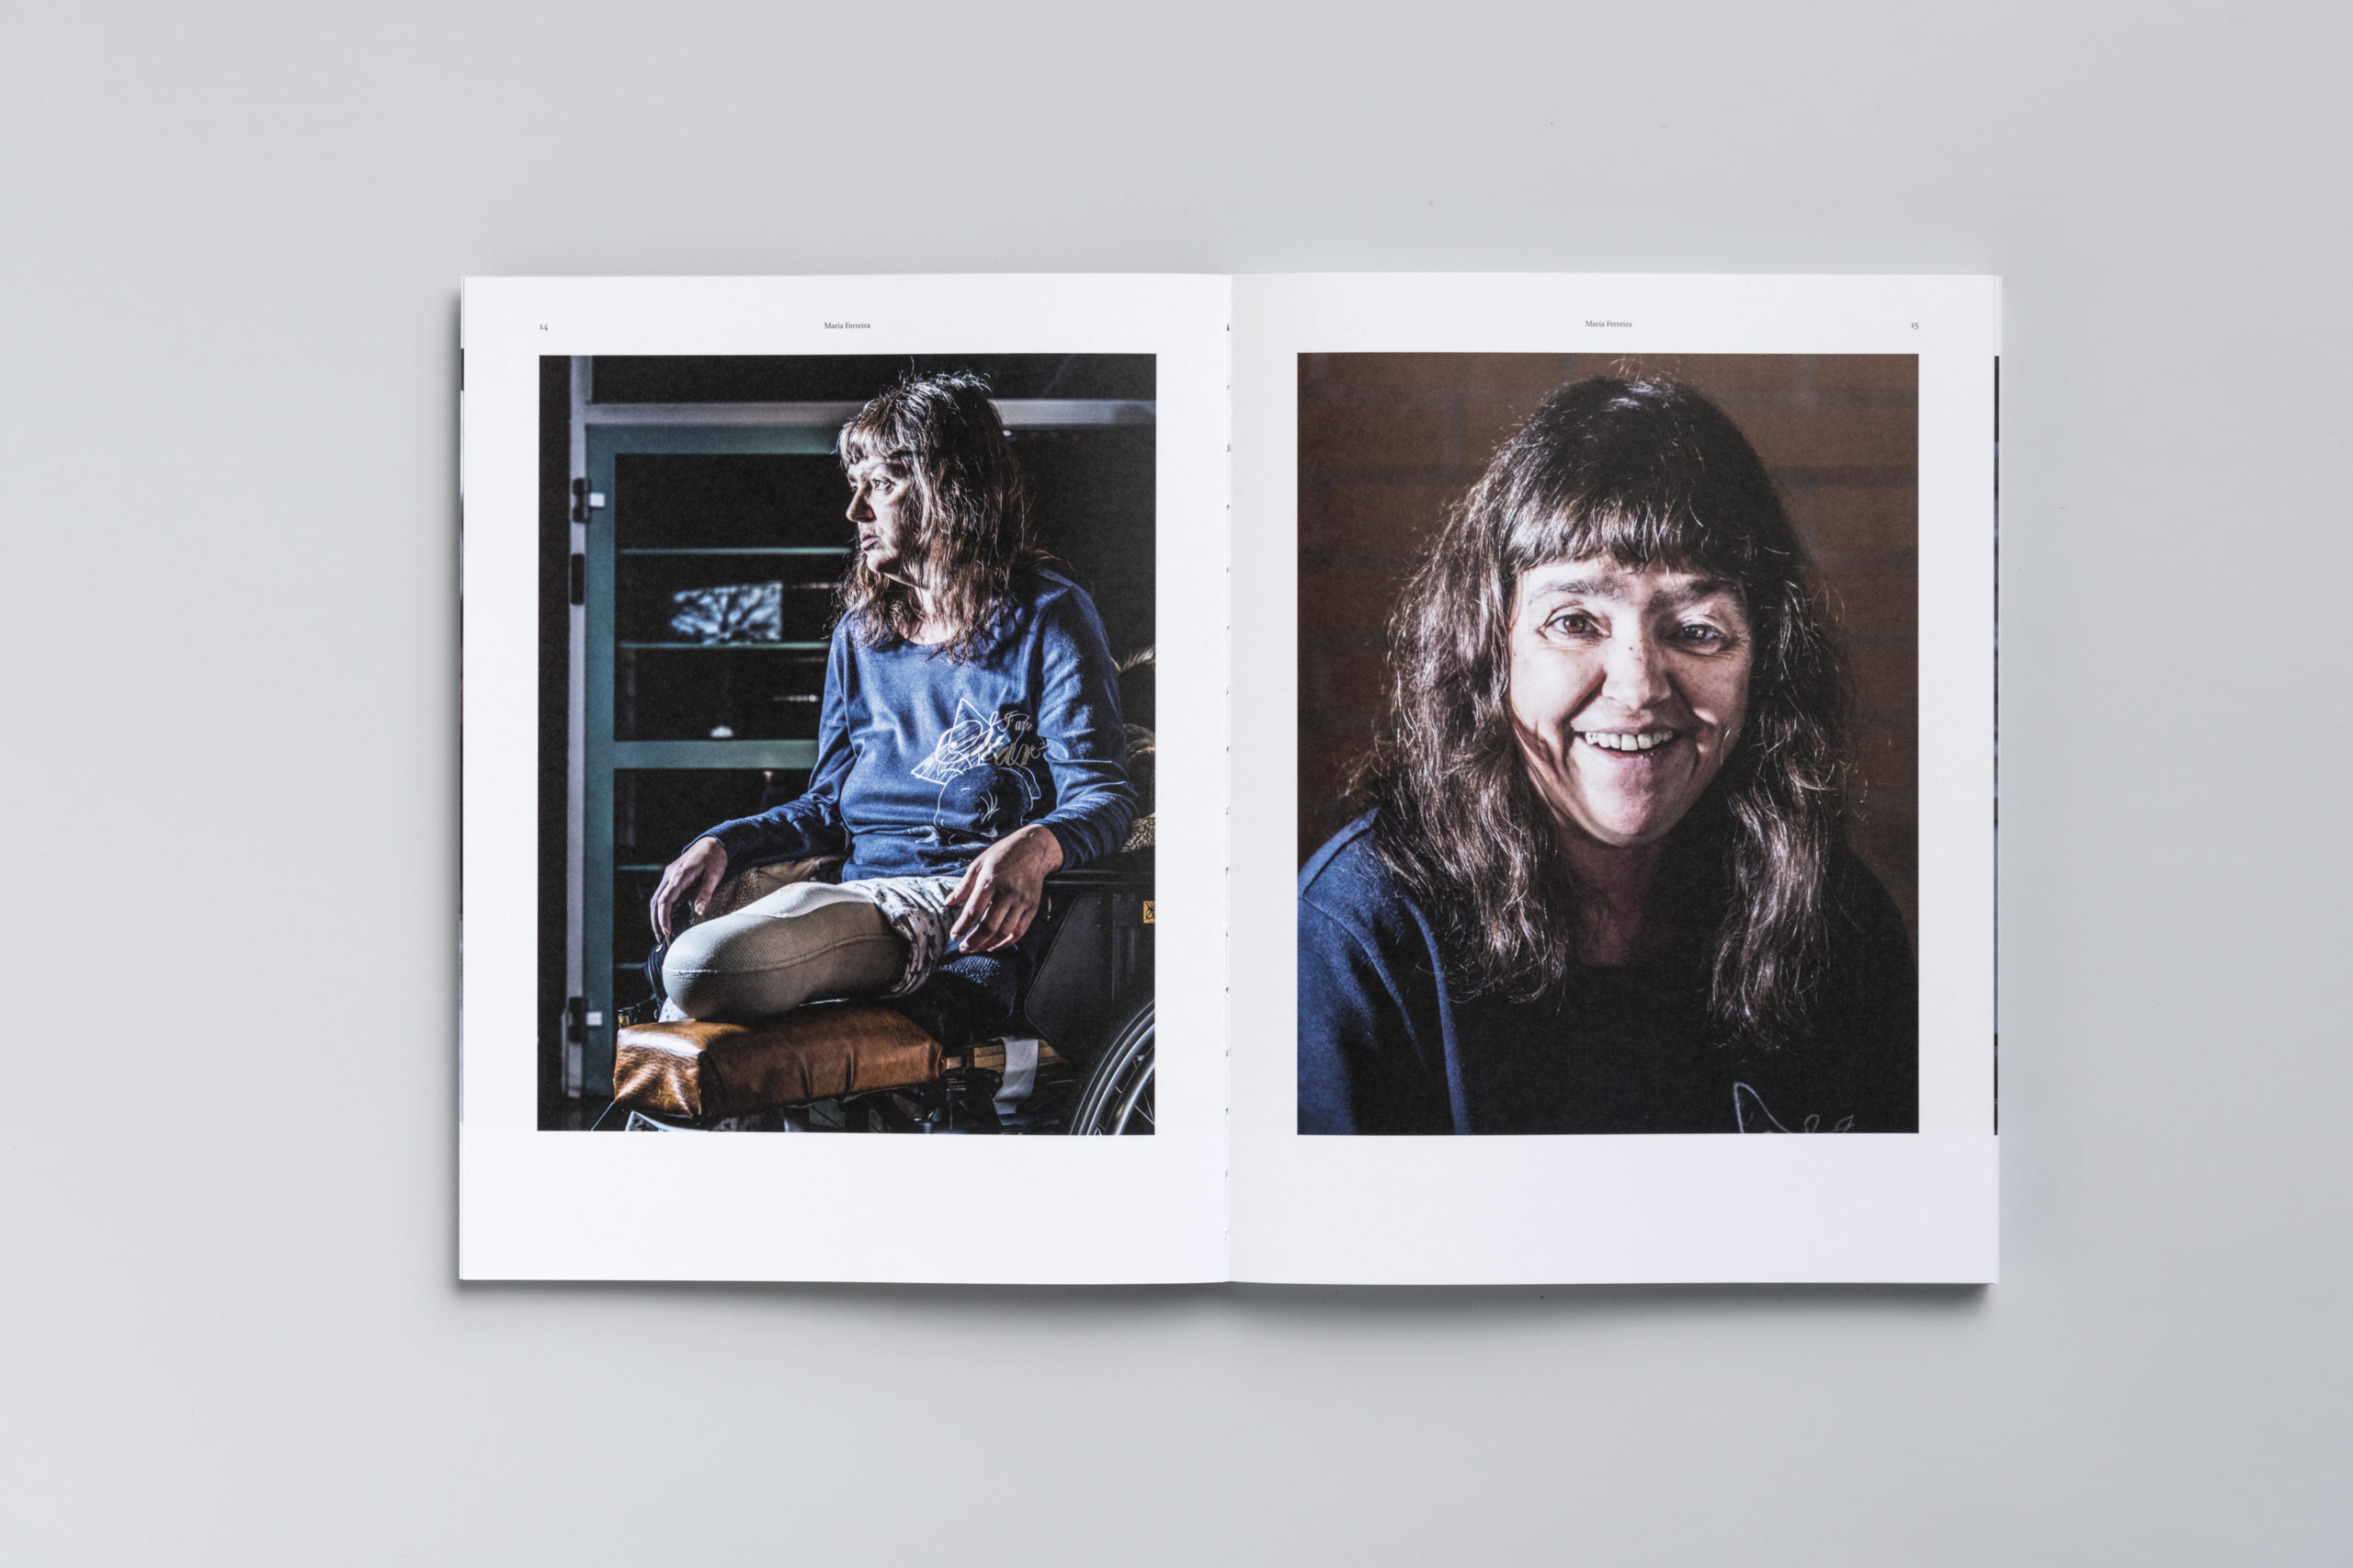 Double page du livre d'arrache-pied, avec deux portraits photographiques.